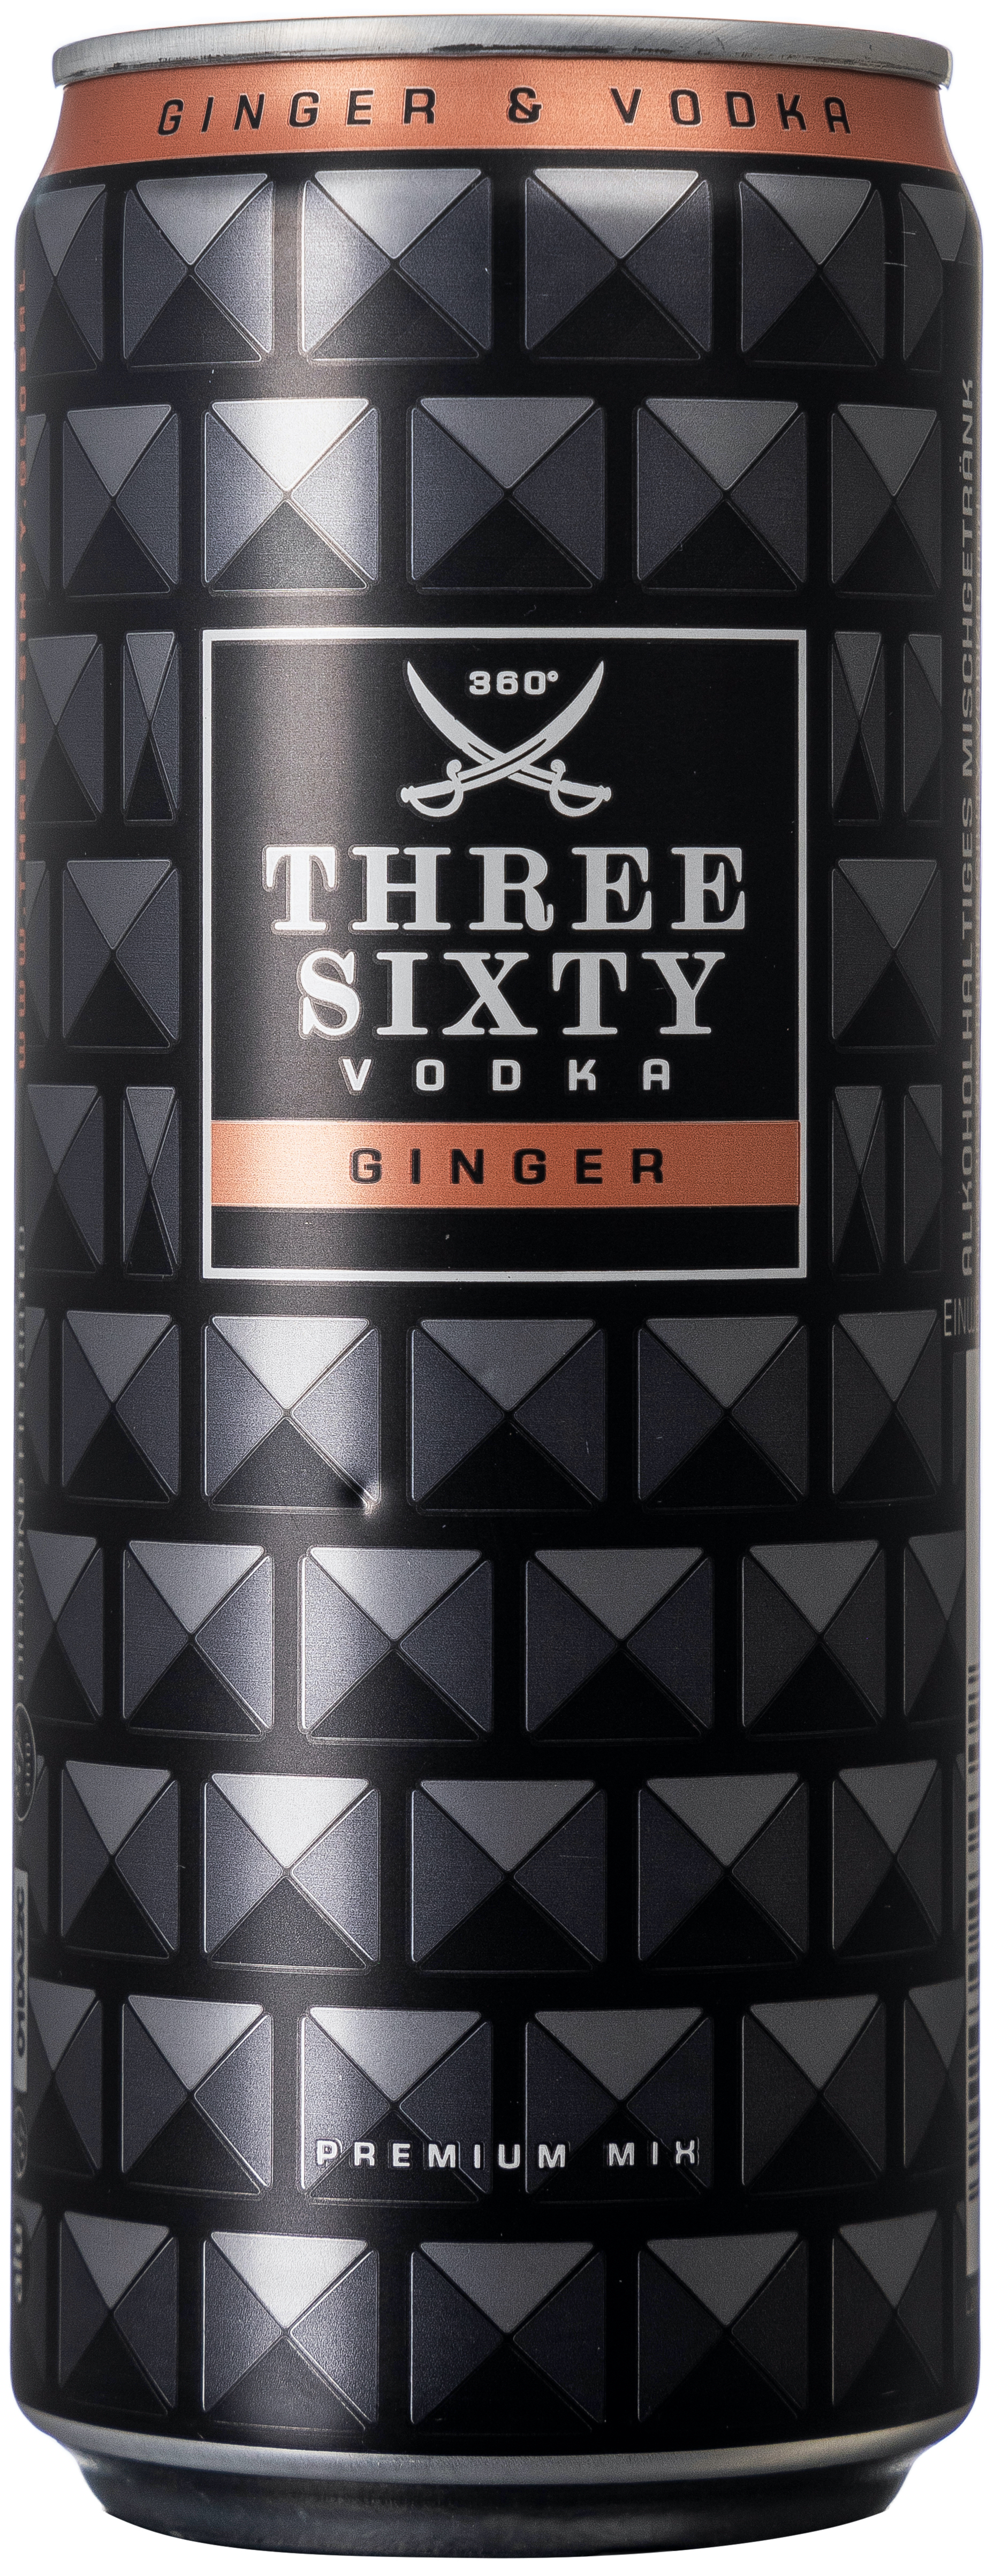 Three Sixty Vodka & Ginger 10% vol. 0,33L EINWEG 